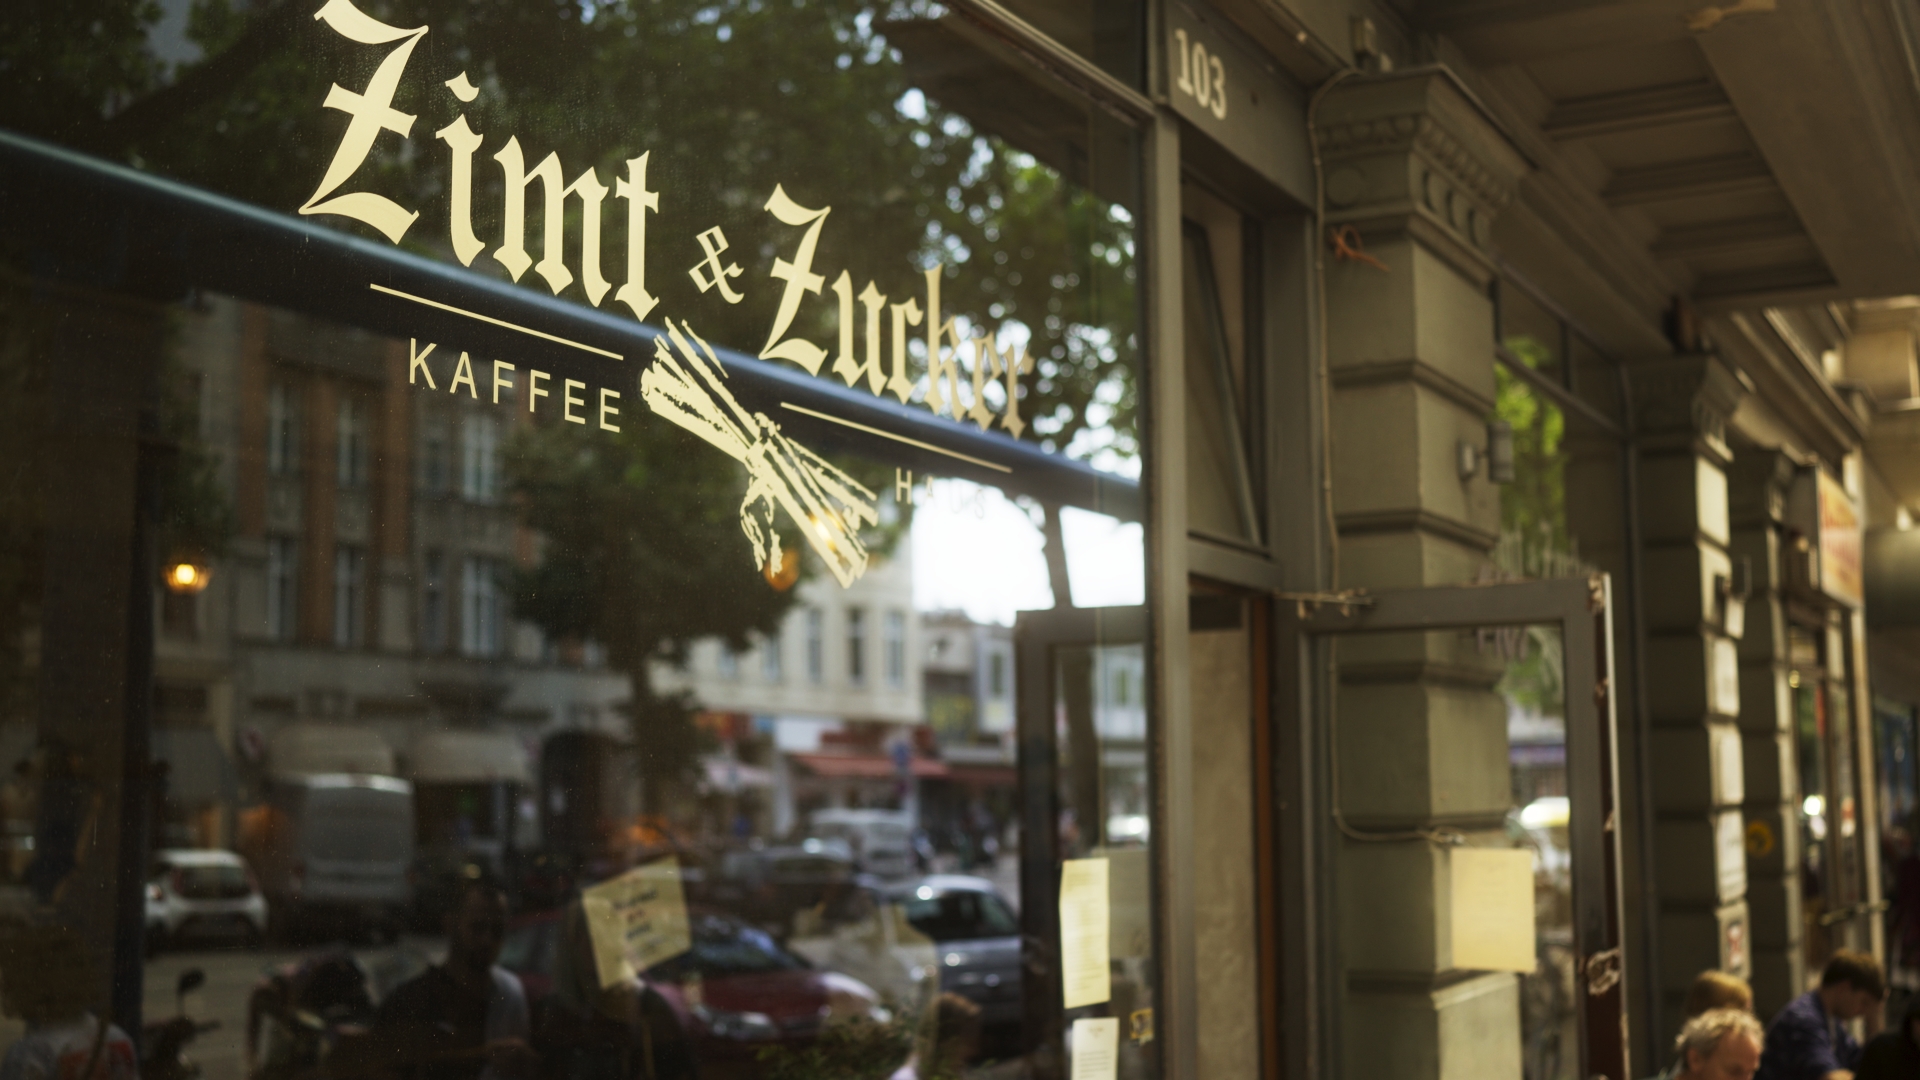 An der Potsdamer Straße gelegen vereint das Kaffeehaus Jugendstil, frischen Geist, Tradition und Berlin Chic. Foto: Zimt & Zucker